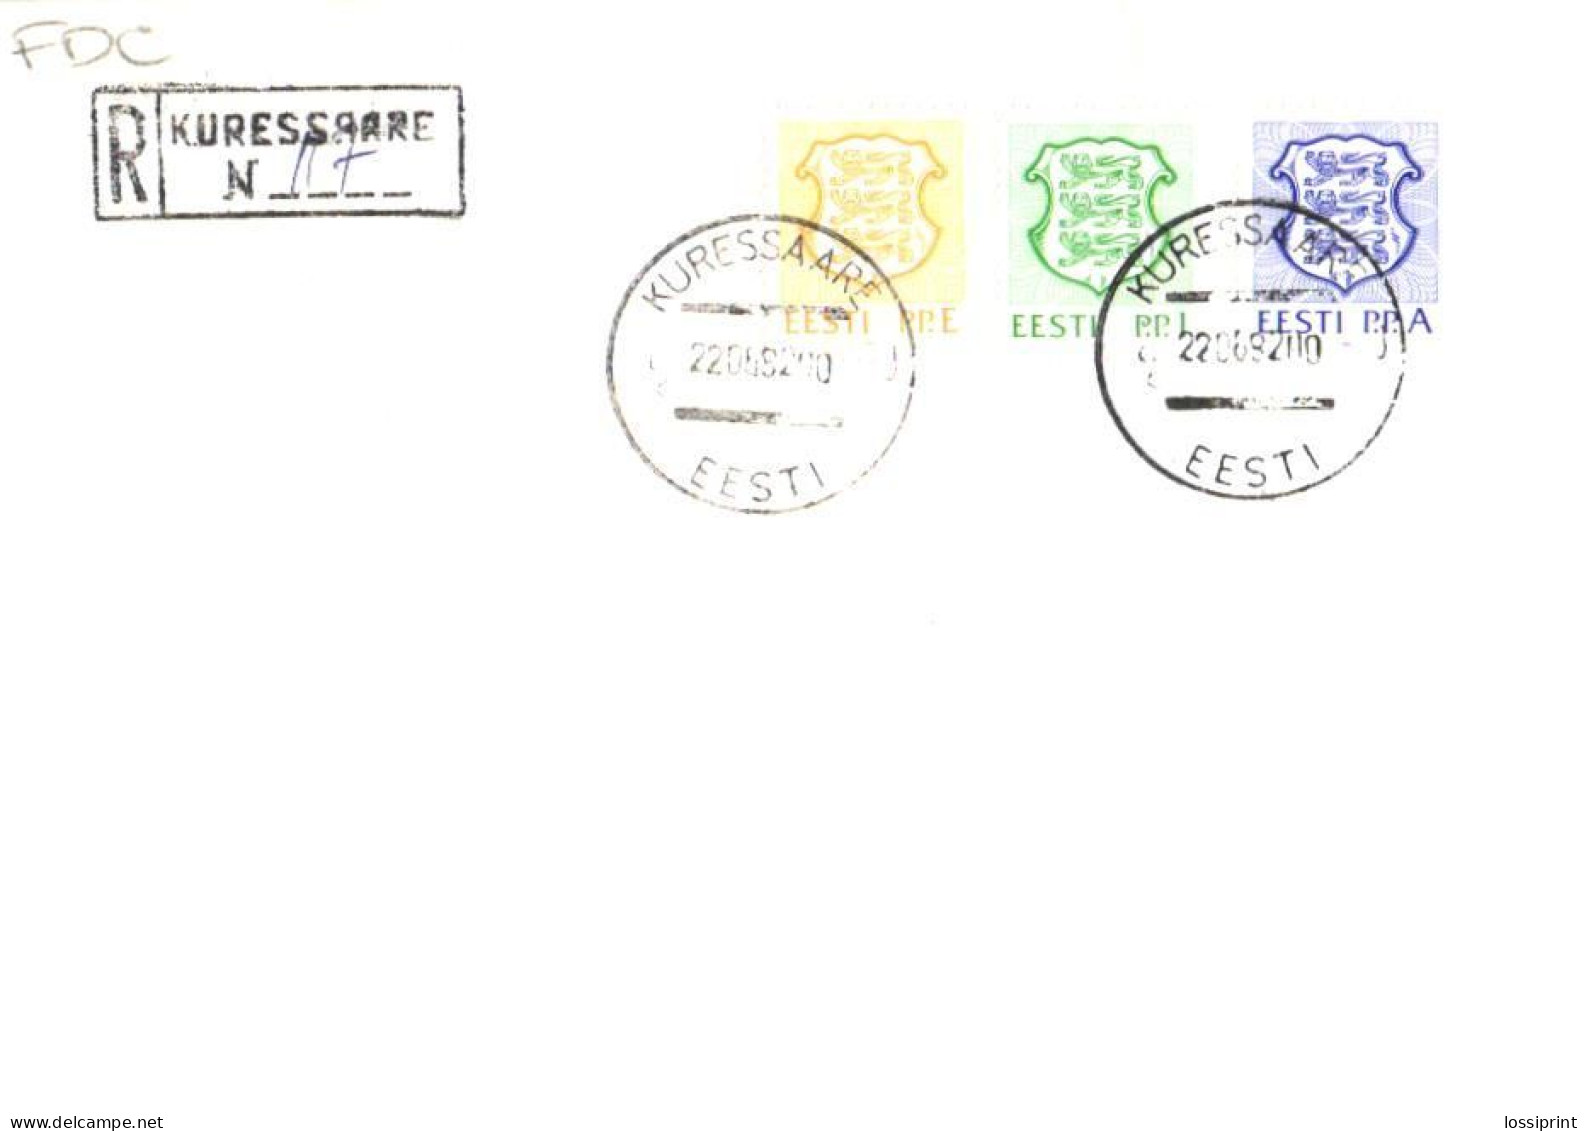 Estonia:FDC, P.P.E , P.P.I And P.P.A Stamps With Kuressaare Registered Cancellation, 1992 - Estonie